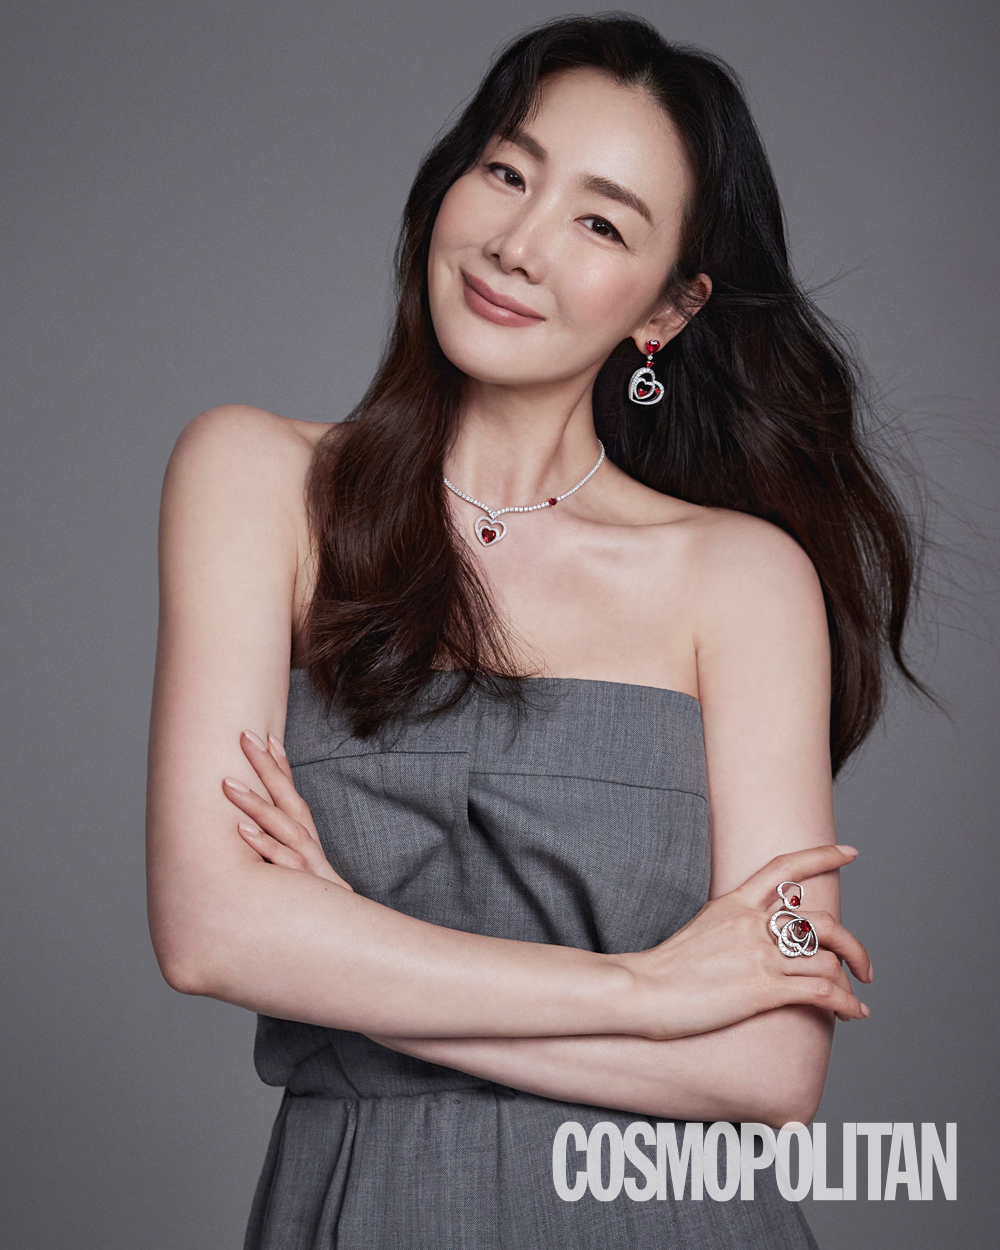 崔智友最新时尚海报公开 耀眼美貌展现优雅气质 明星搭配 第1张